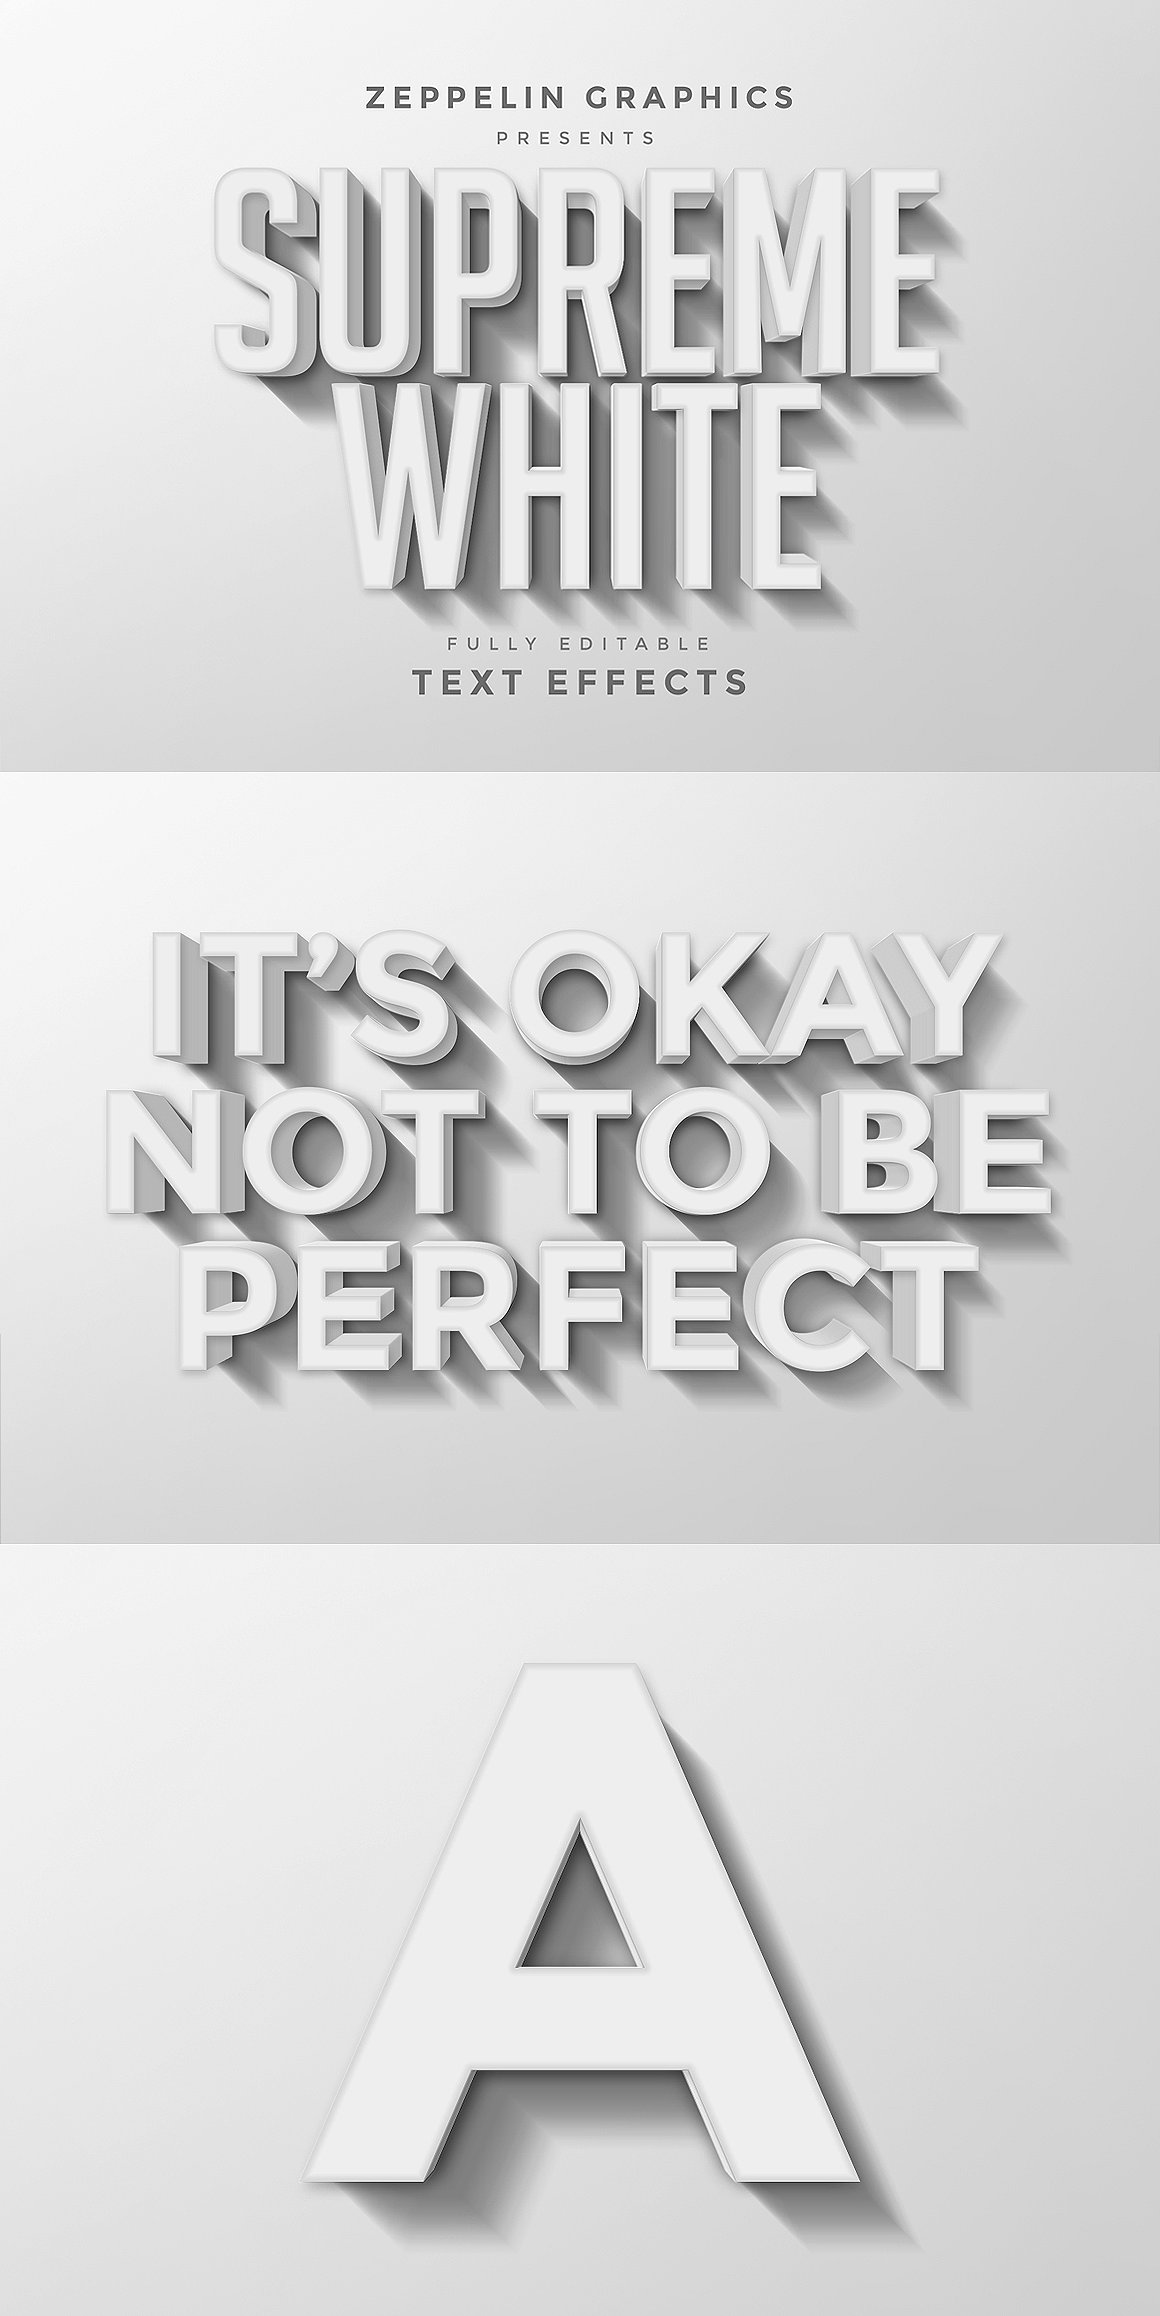 非常好用的3D文字图层样式 3D Text Effects插图12